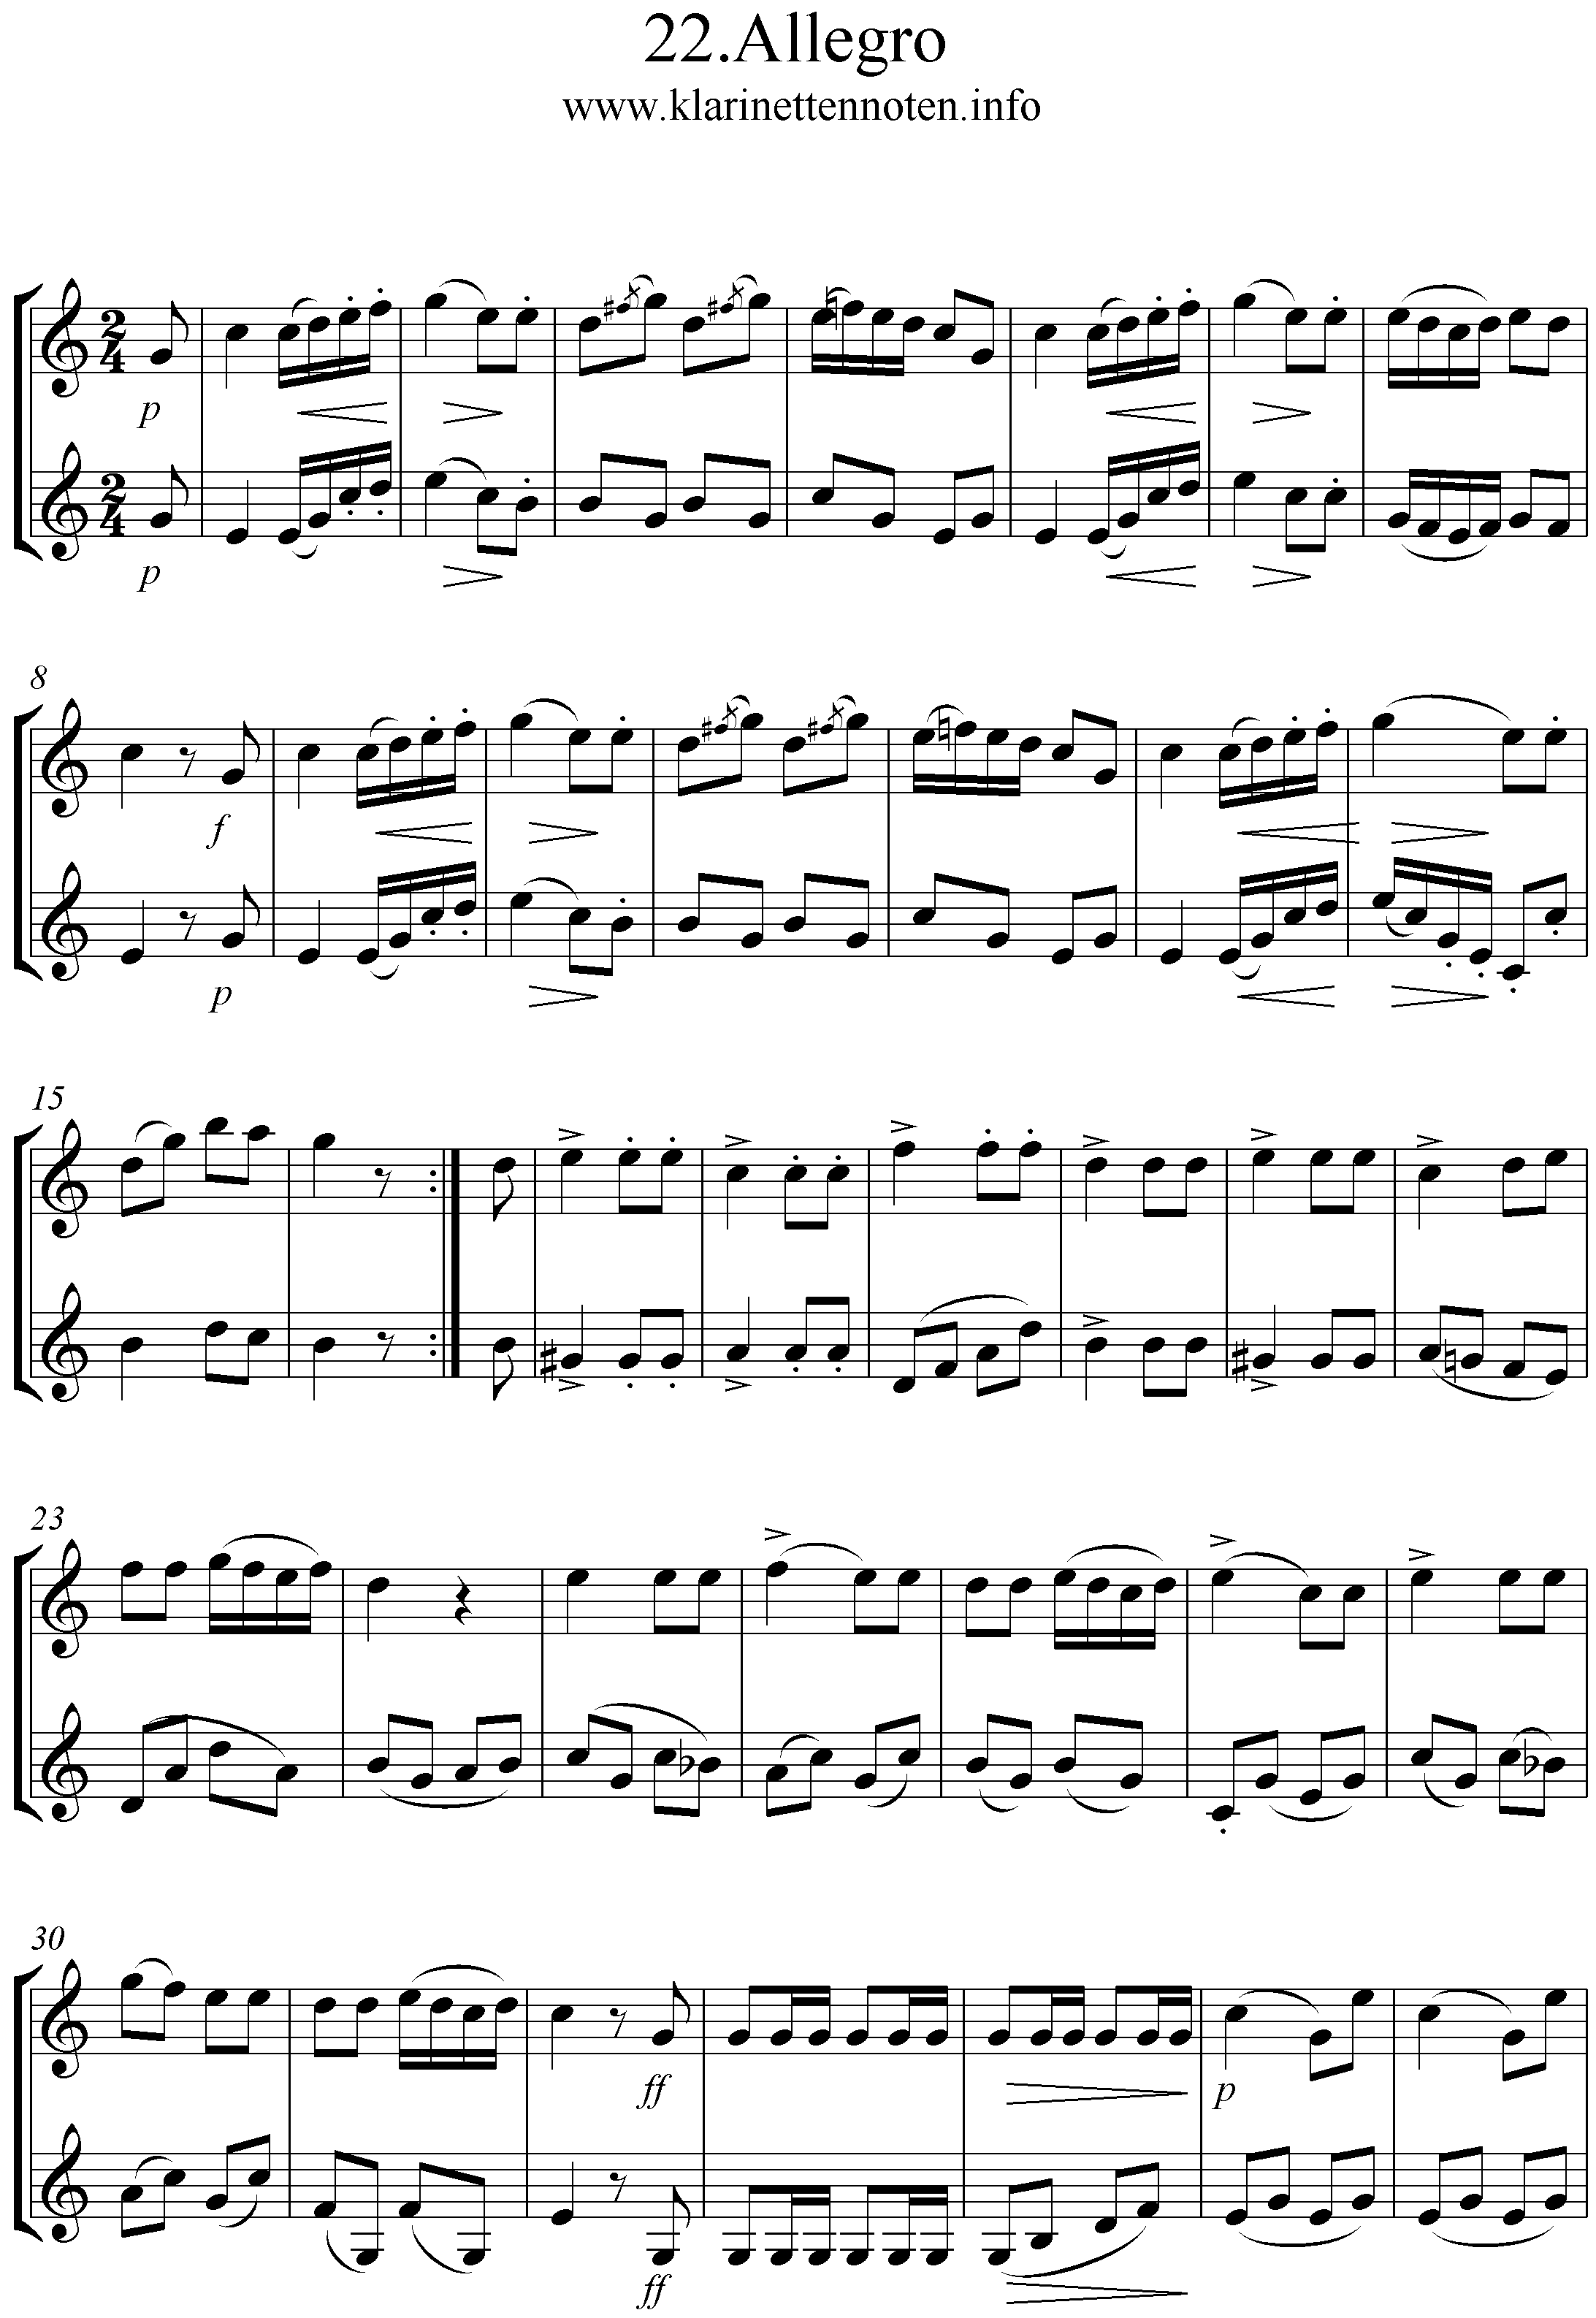 24 instruktive Duette- Joseph Küffner -22 Allegro